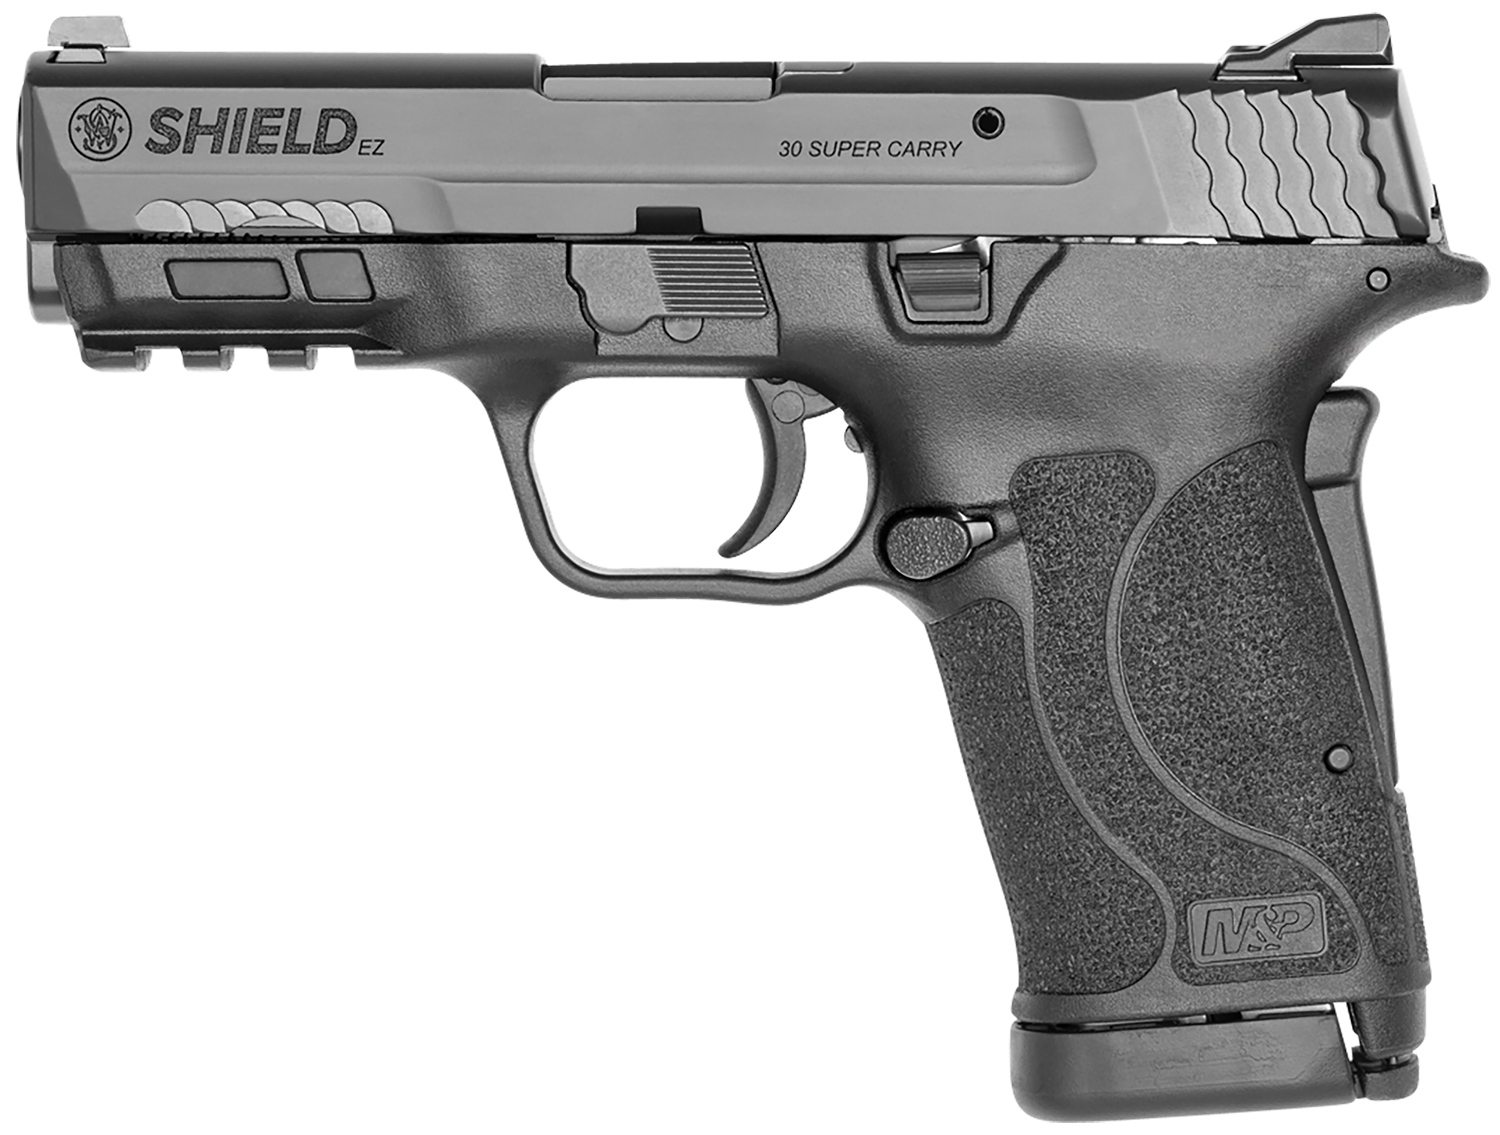 Smith & Wesson M&P Shield EZ 30 Super Carry Pistol, Black (13459)